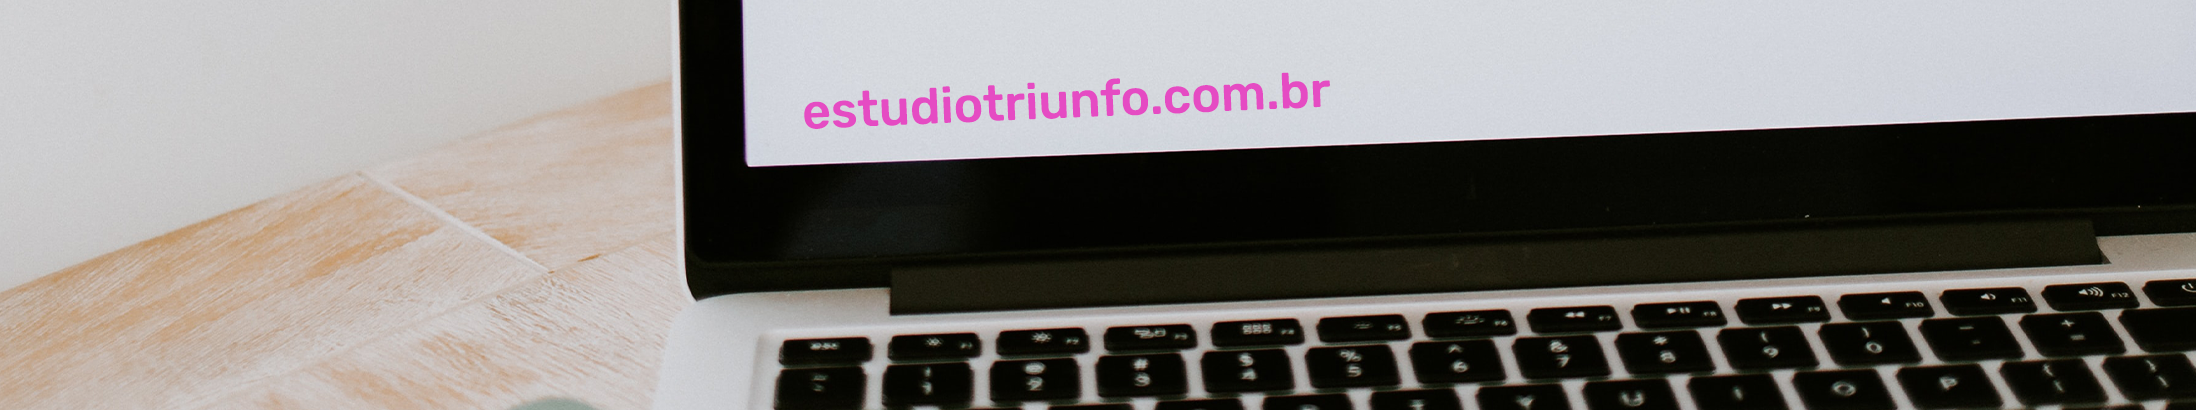 Баннер профиля Triunfo Estudio Digital